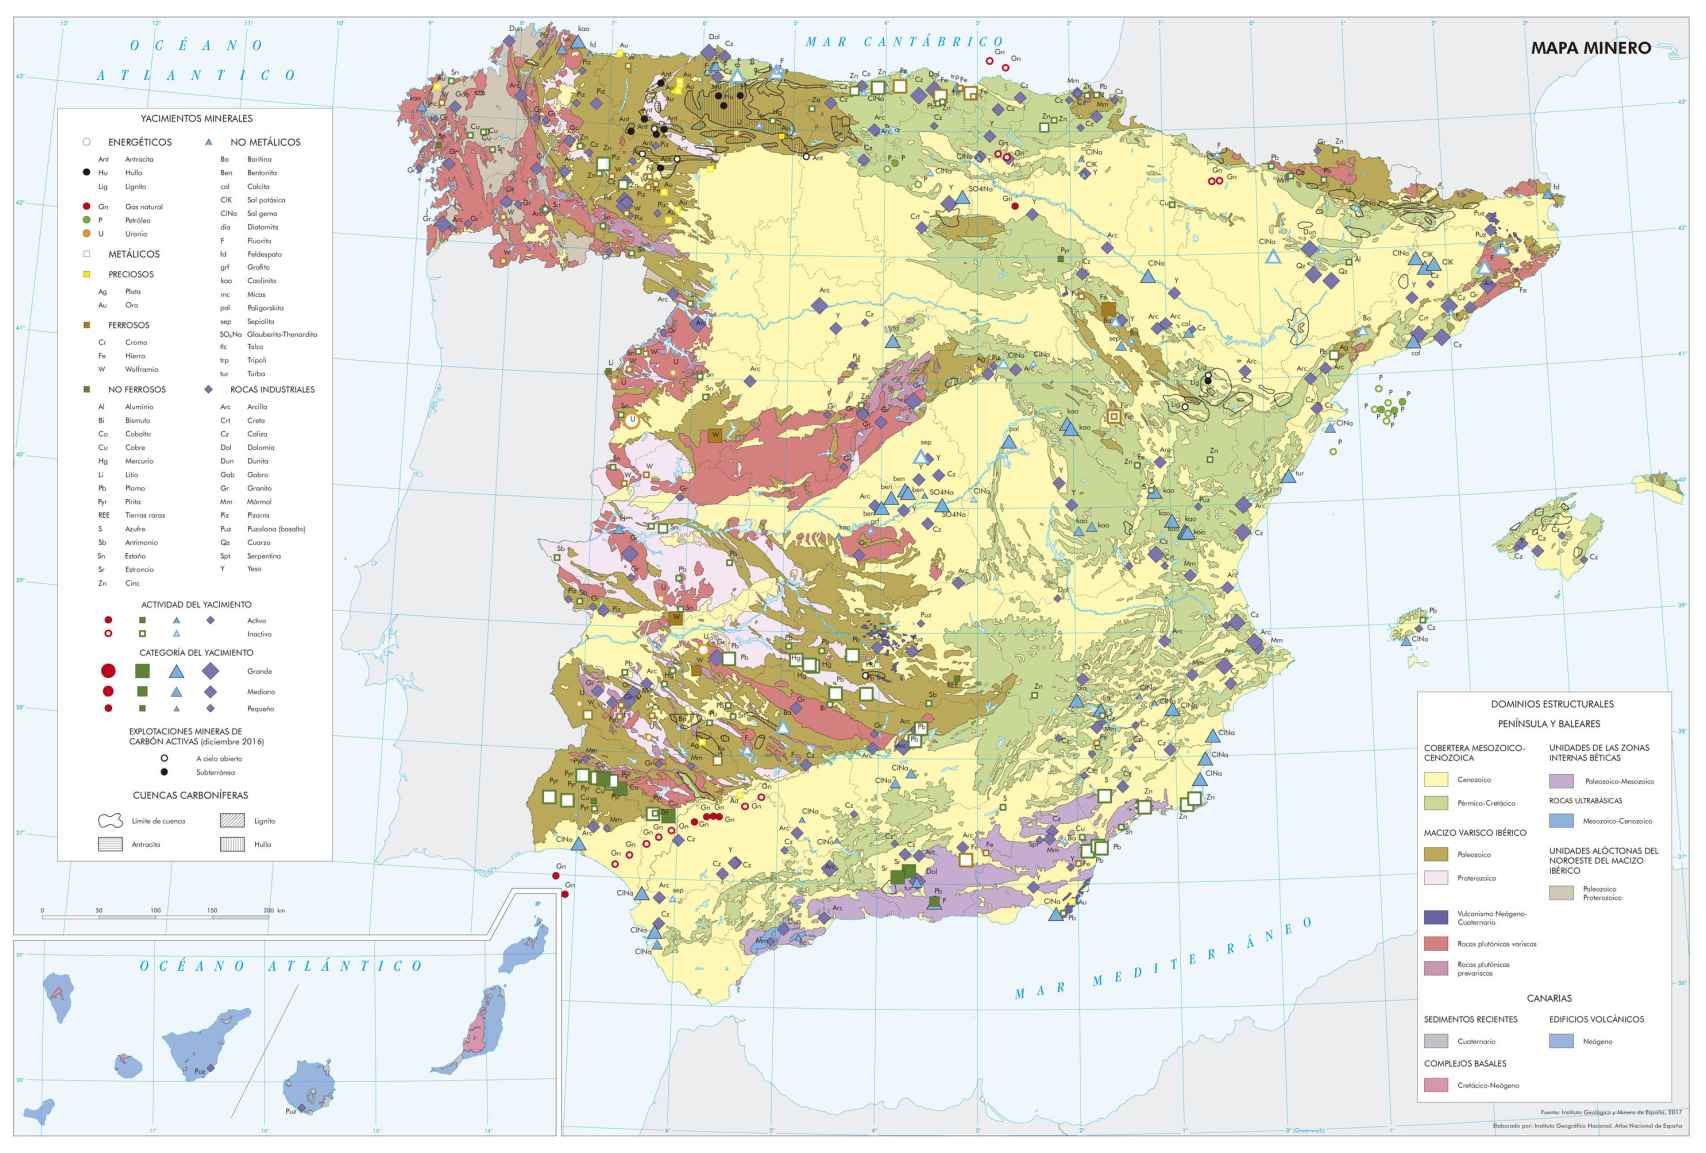 Mapa de minerales estratégicos.